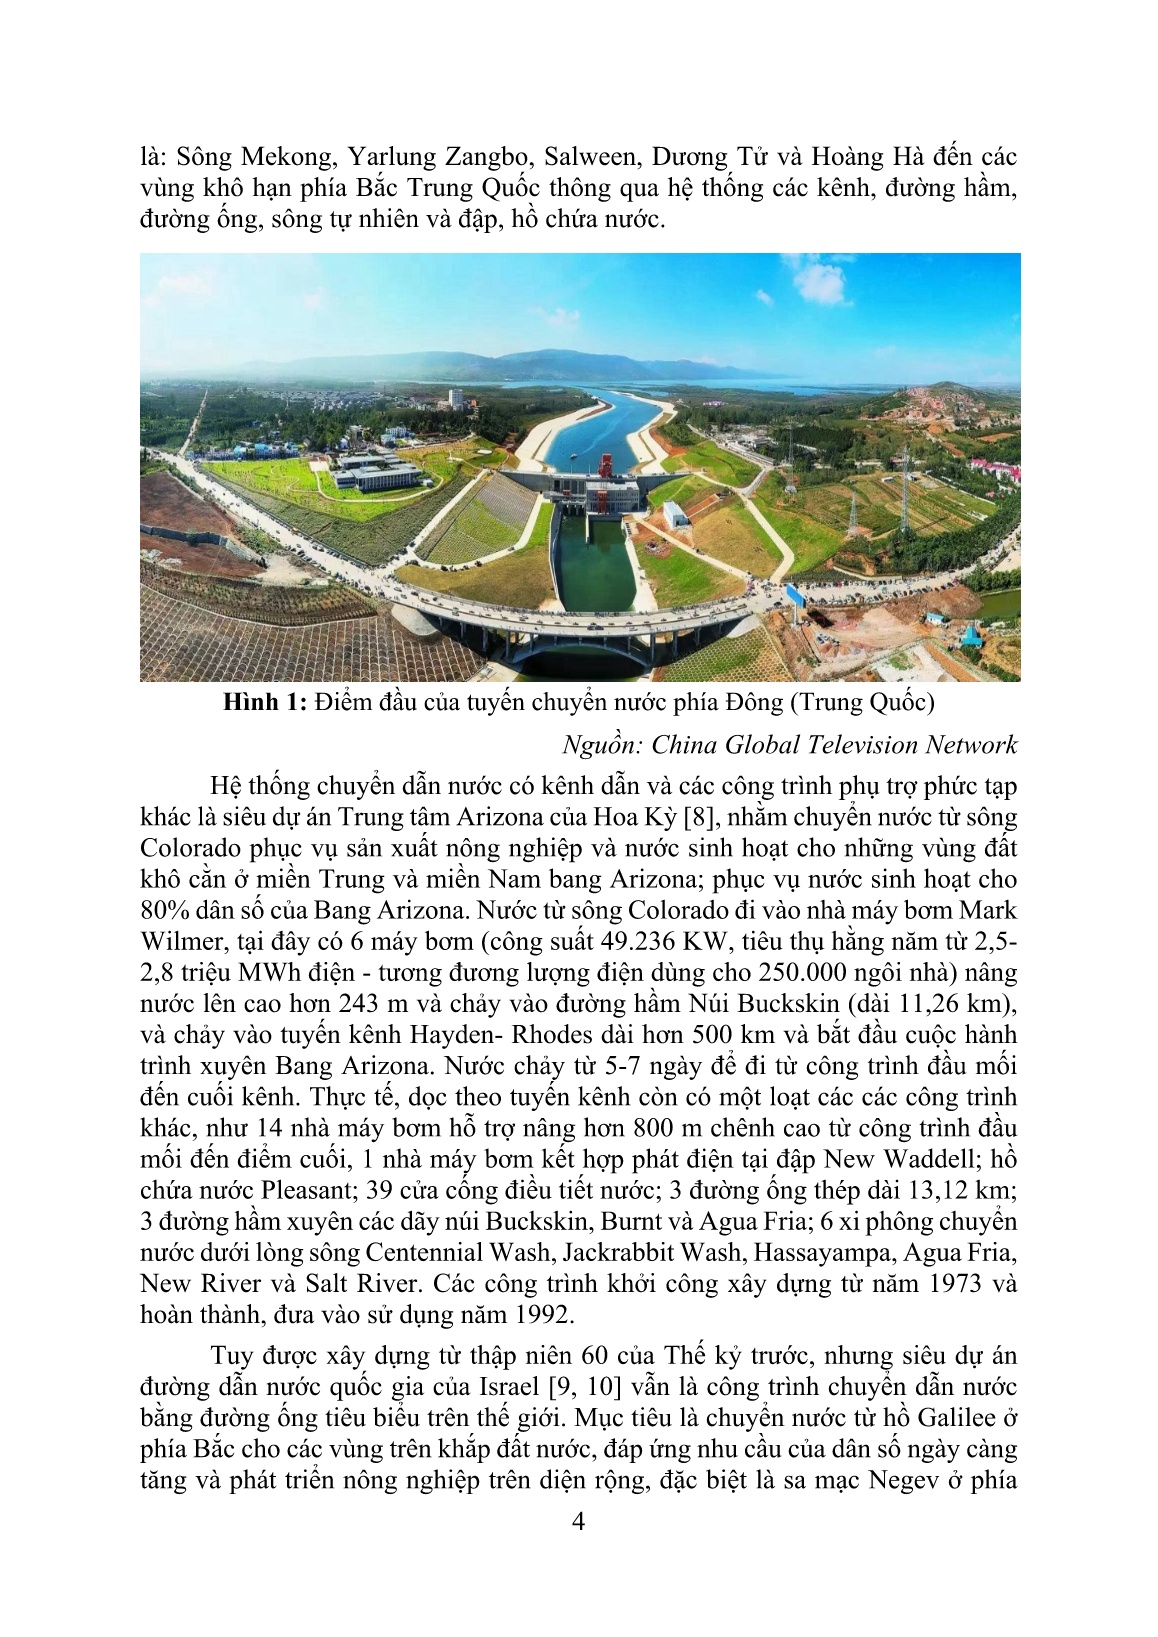 Kinh nghiệm từ các siêu dự án chuyển nước trên thế giới đối với các vùng hạn hán, thiếu nước ở Việt Nam trang 4